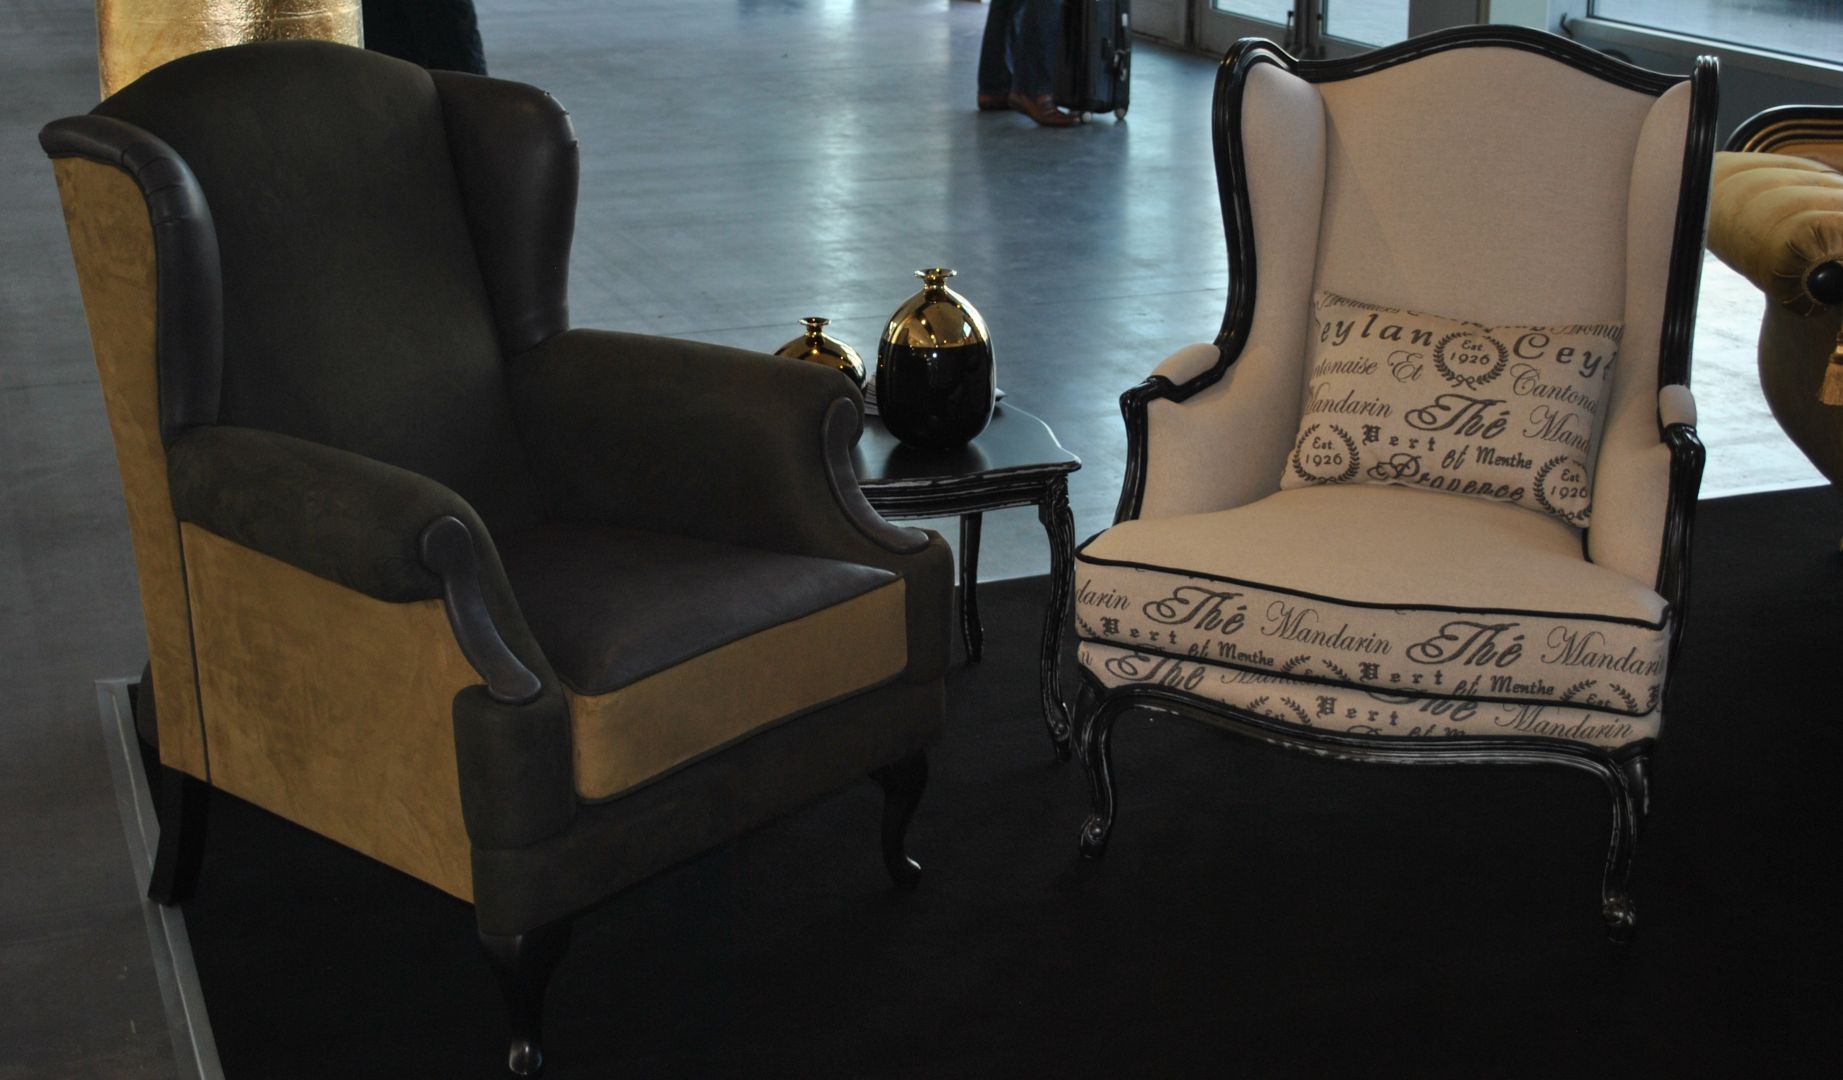 Włoskie fotele firmy Exedra to wspaniały pomysł na wygodę i styl w każdym domu.
Fot. Piotr Sawczuk